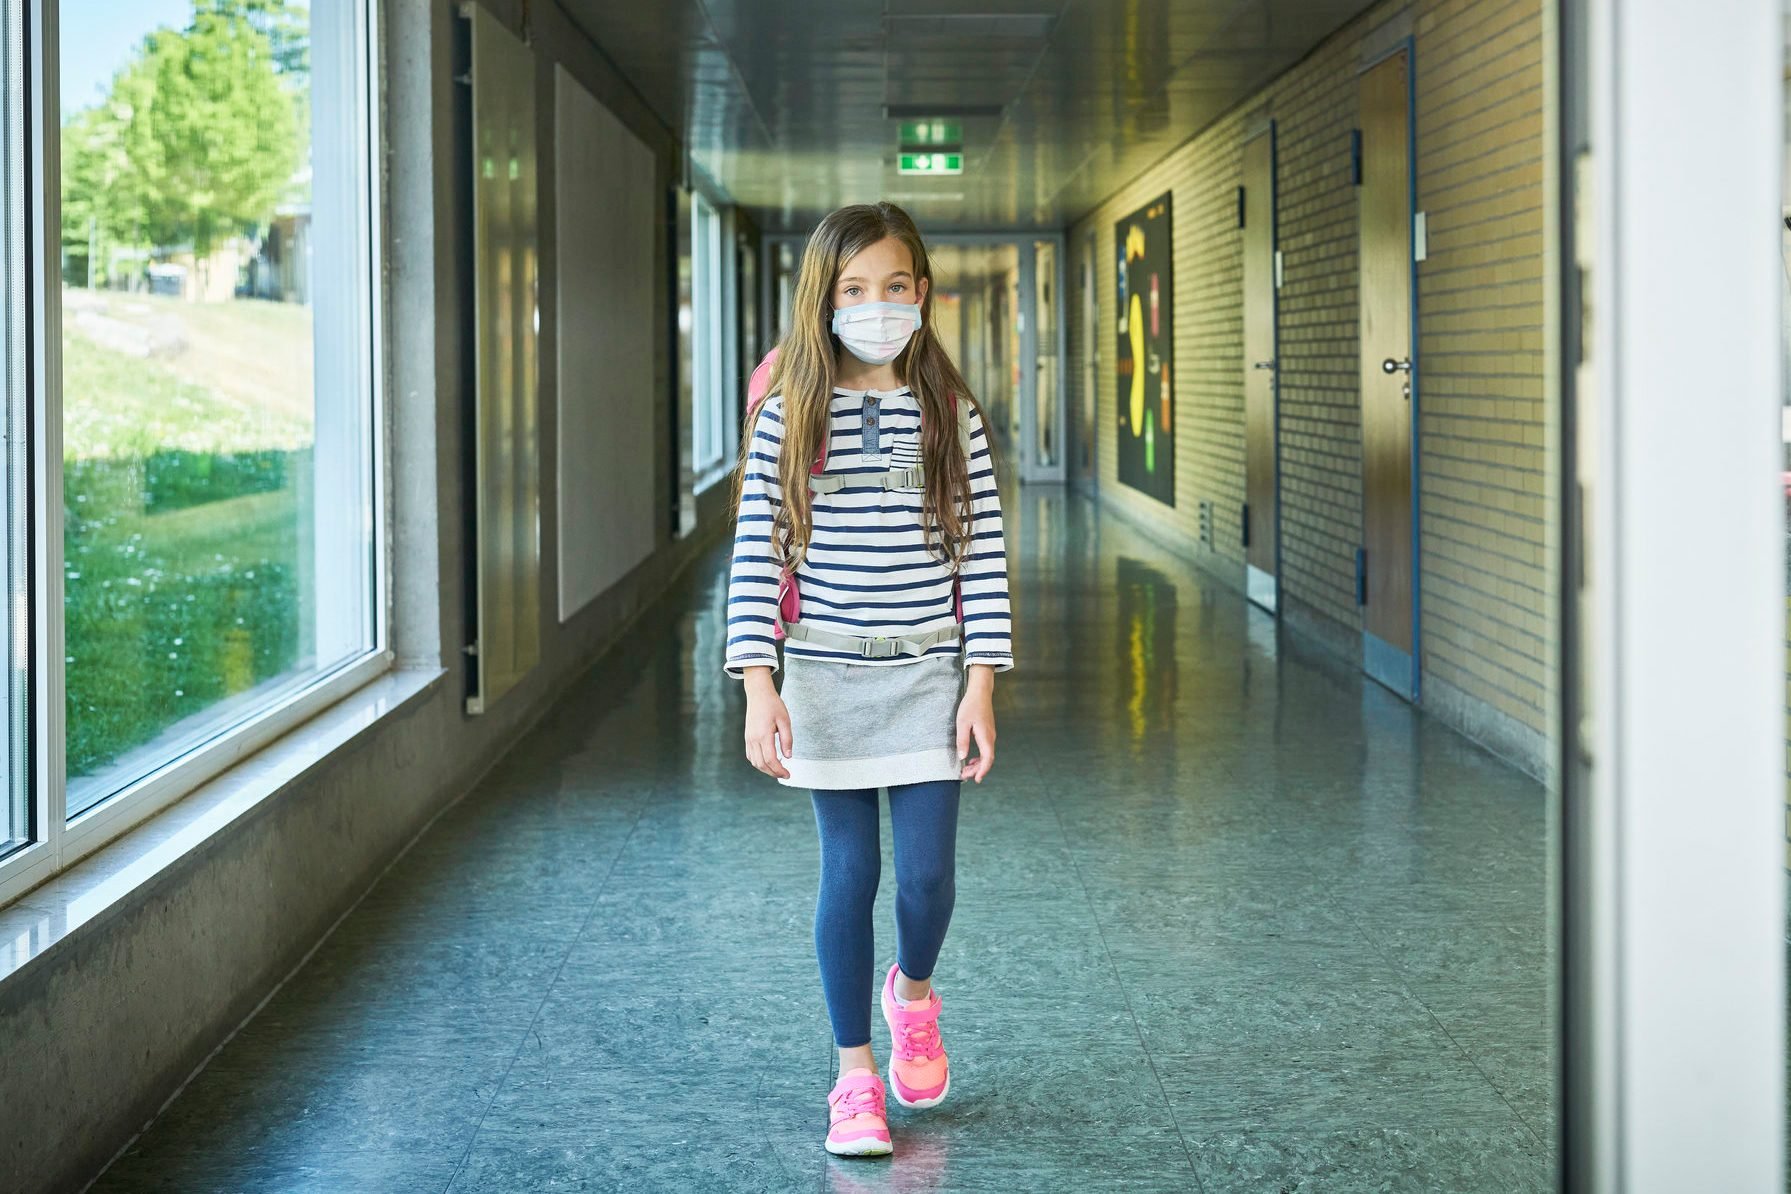 Girl wearing mask walking on school corridor